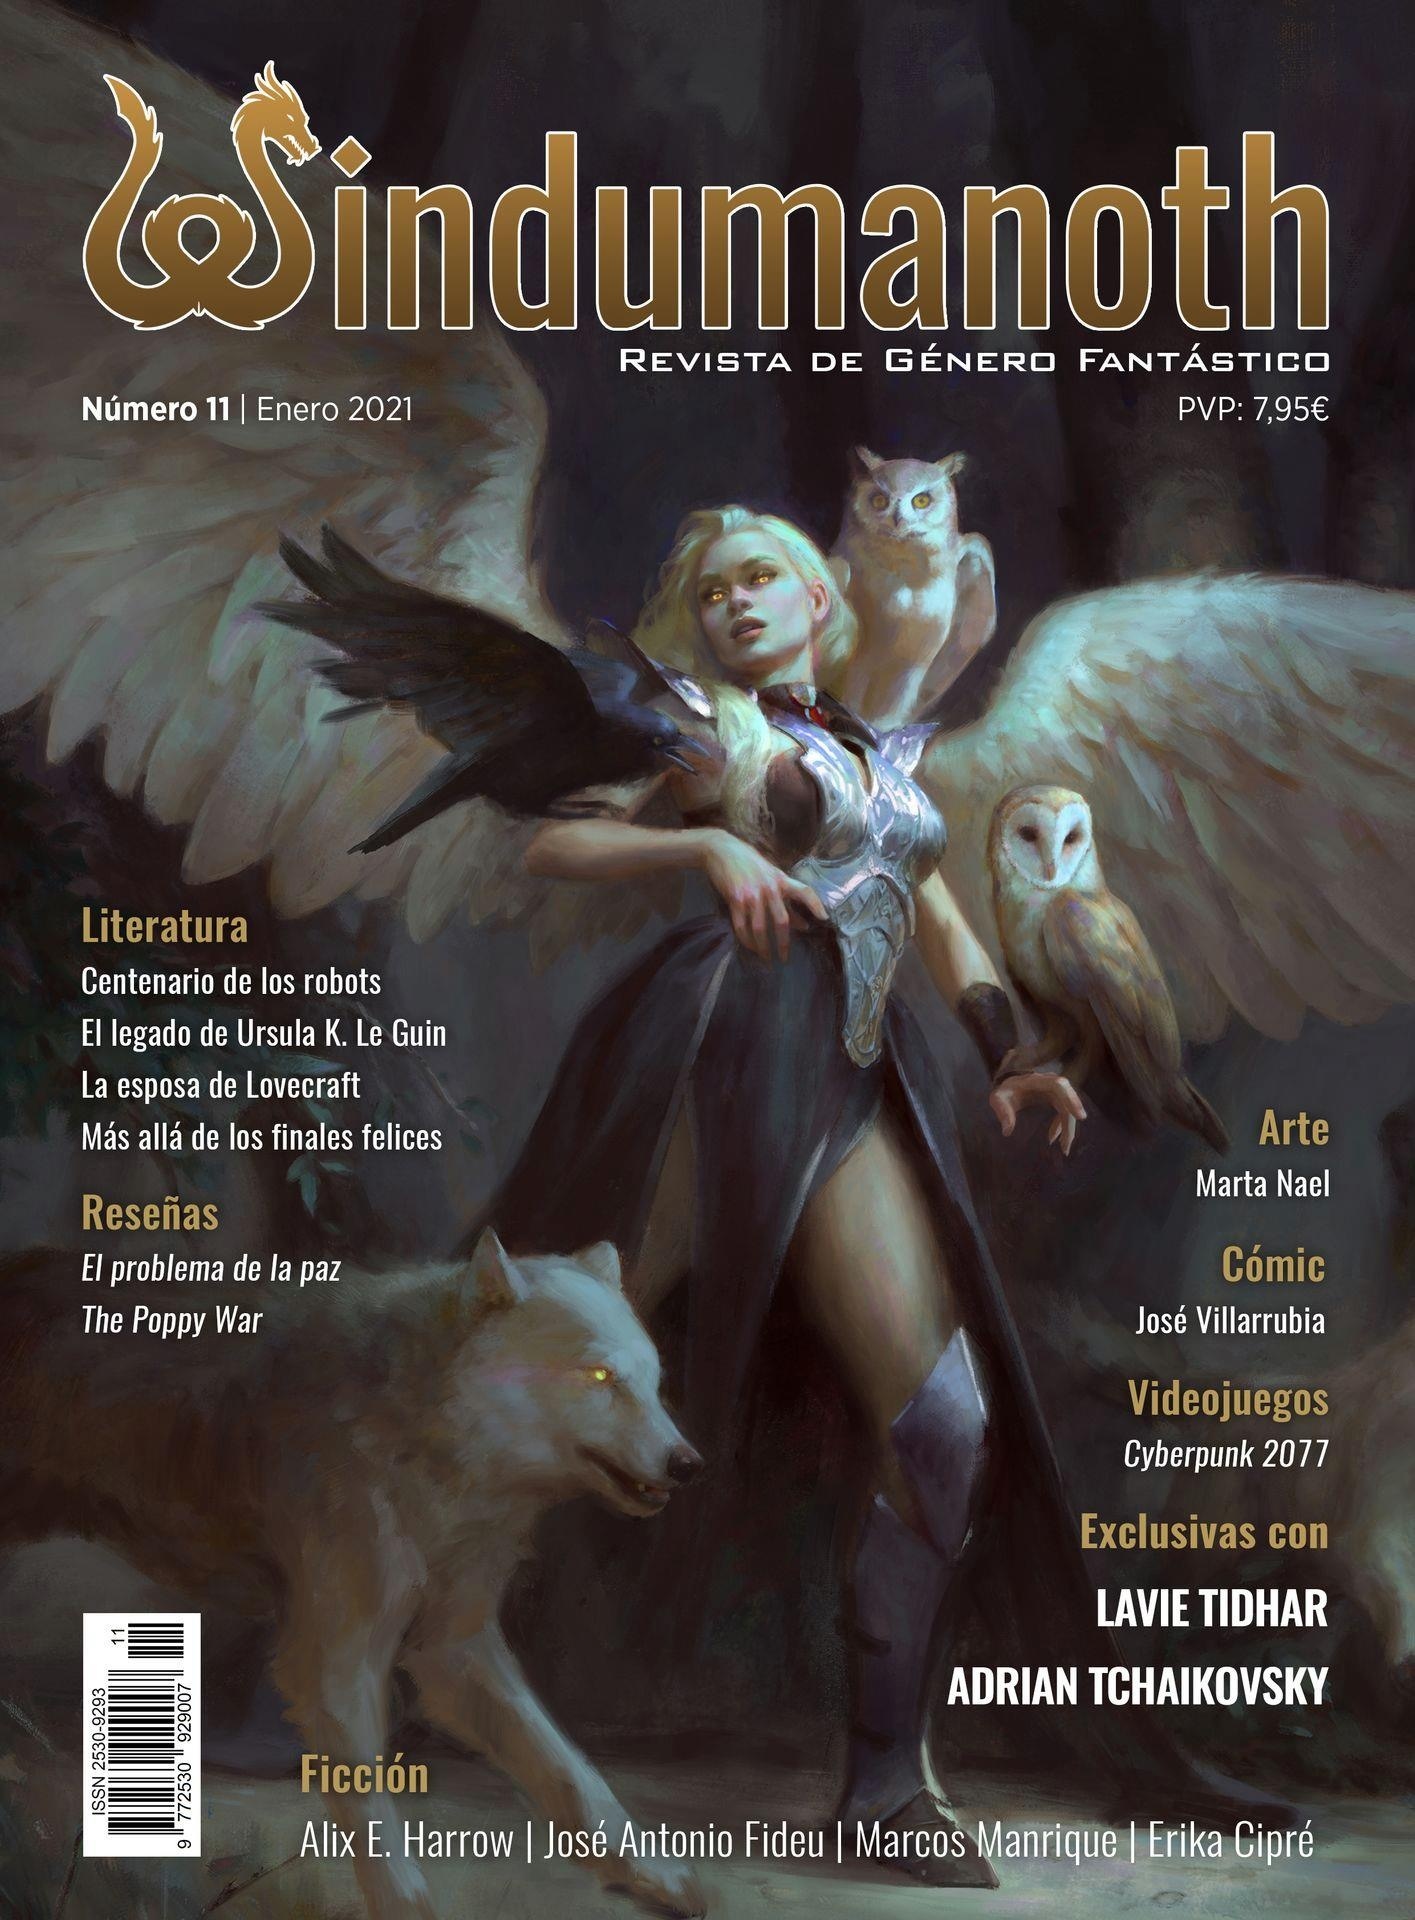 Windumanoth nº 11. Enero 2021 "Revista de género fantástico". 